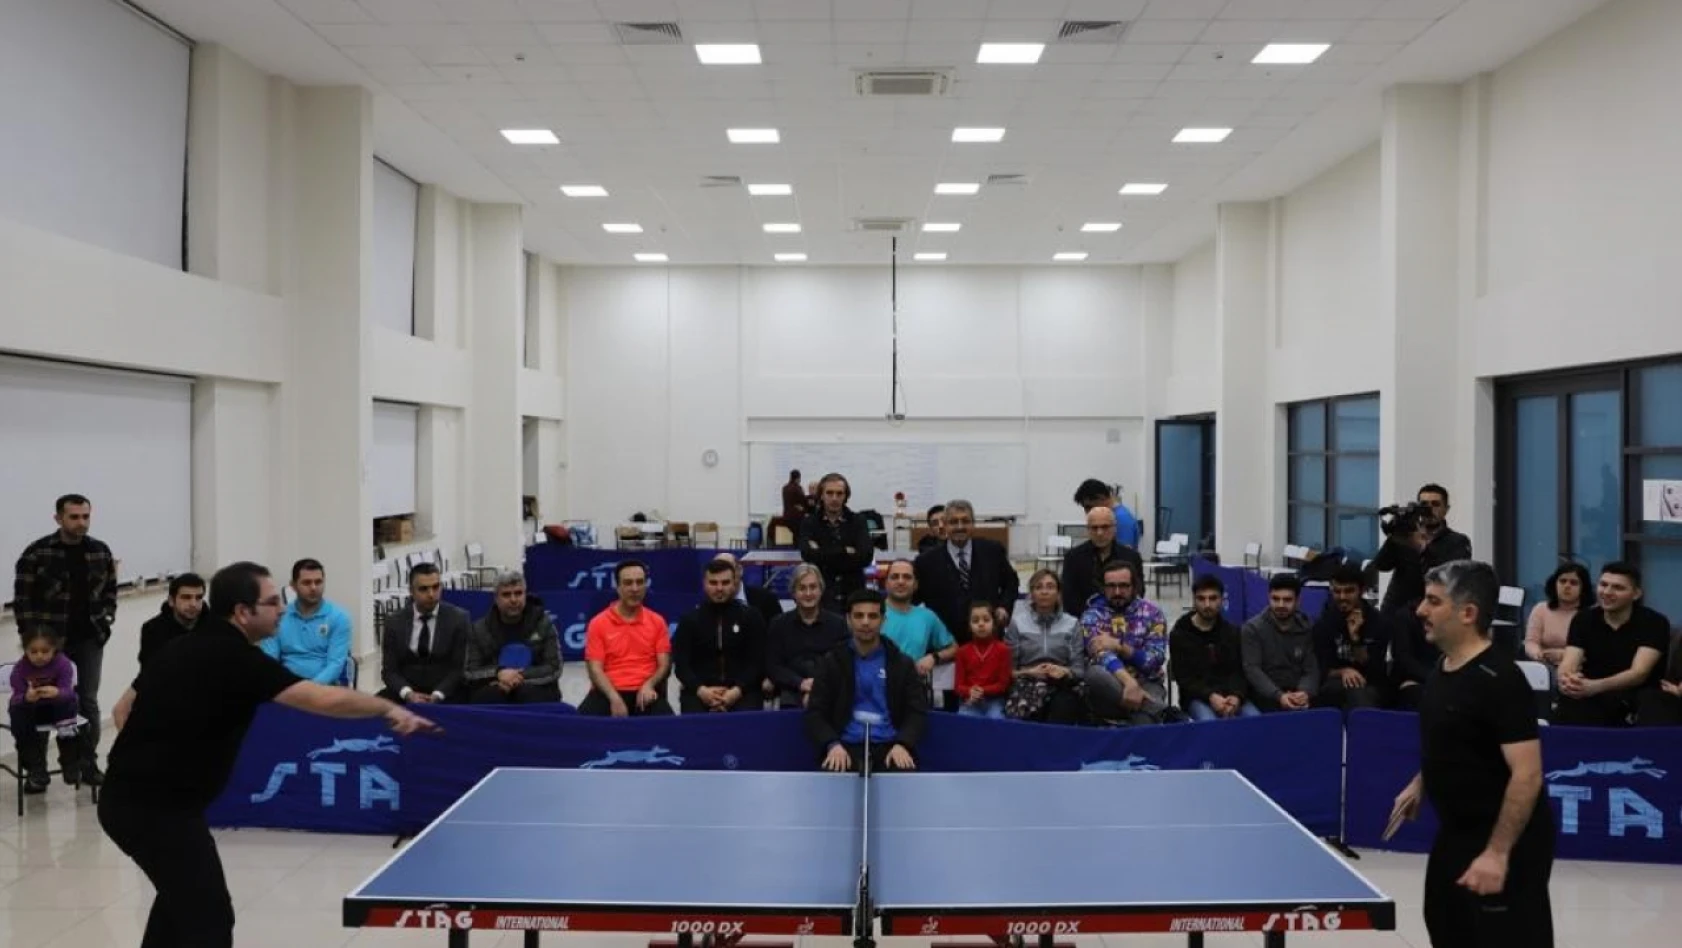 FÜ'de personel arası masa tenisi turnuvası sona erdi